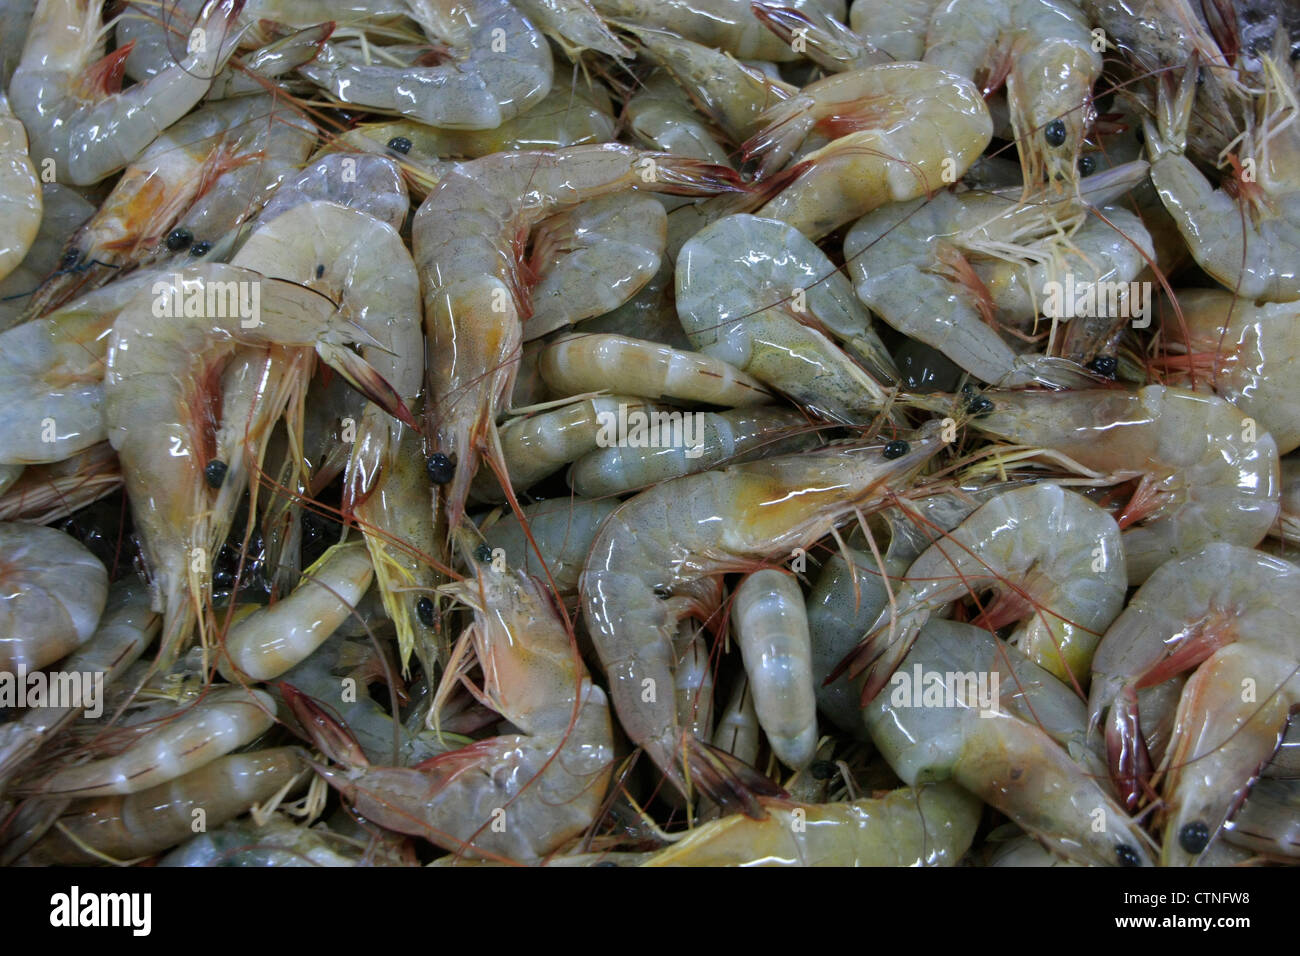 Shrimp background Stock Photo